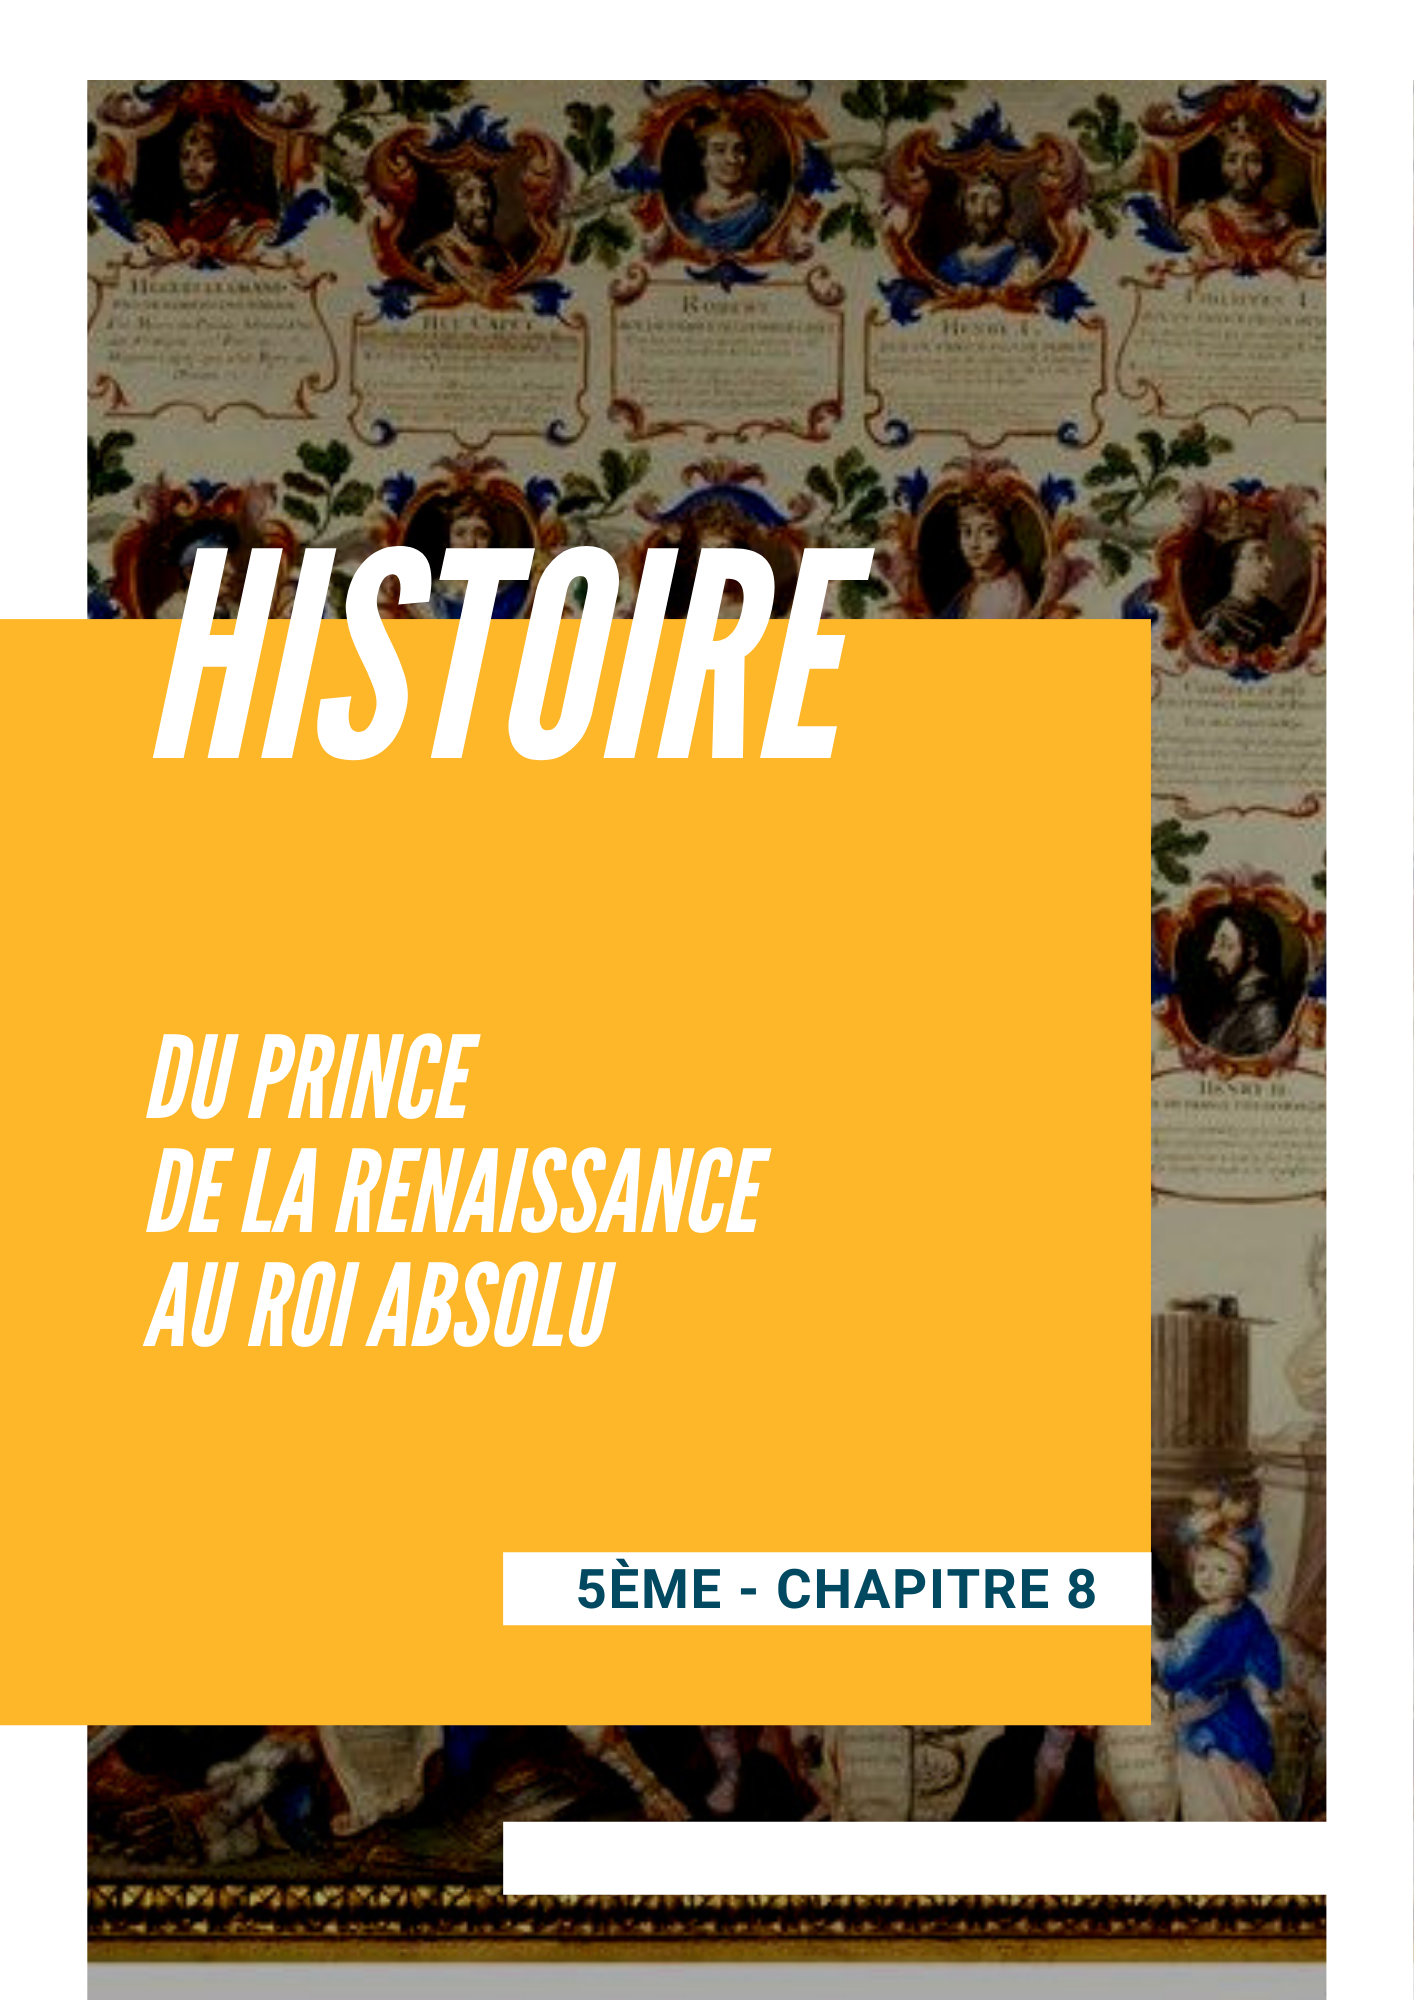 Chapitre 8 - Du prince de la Renaissance au roi absolu